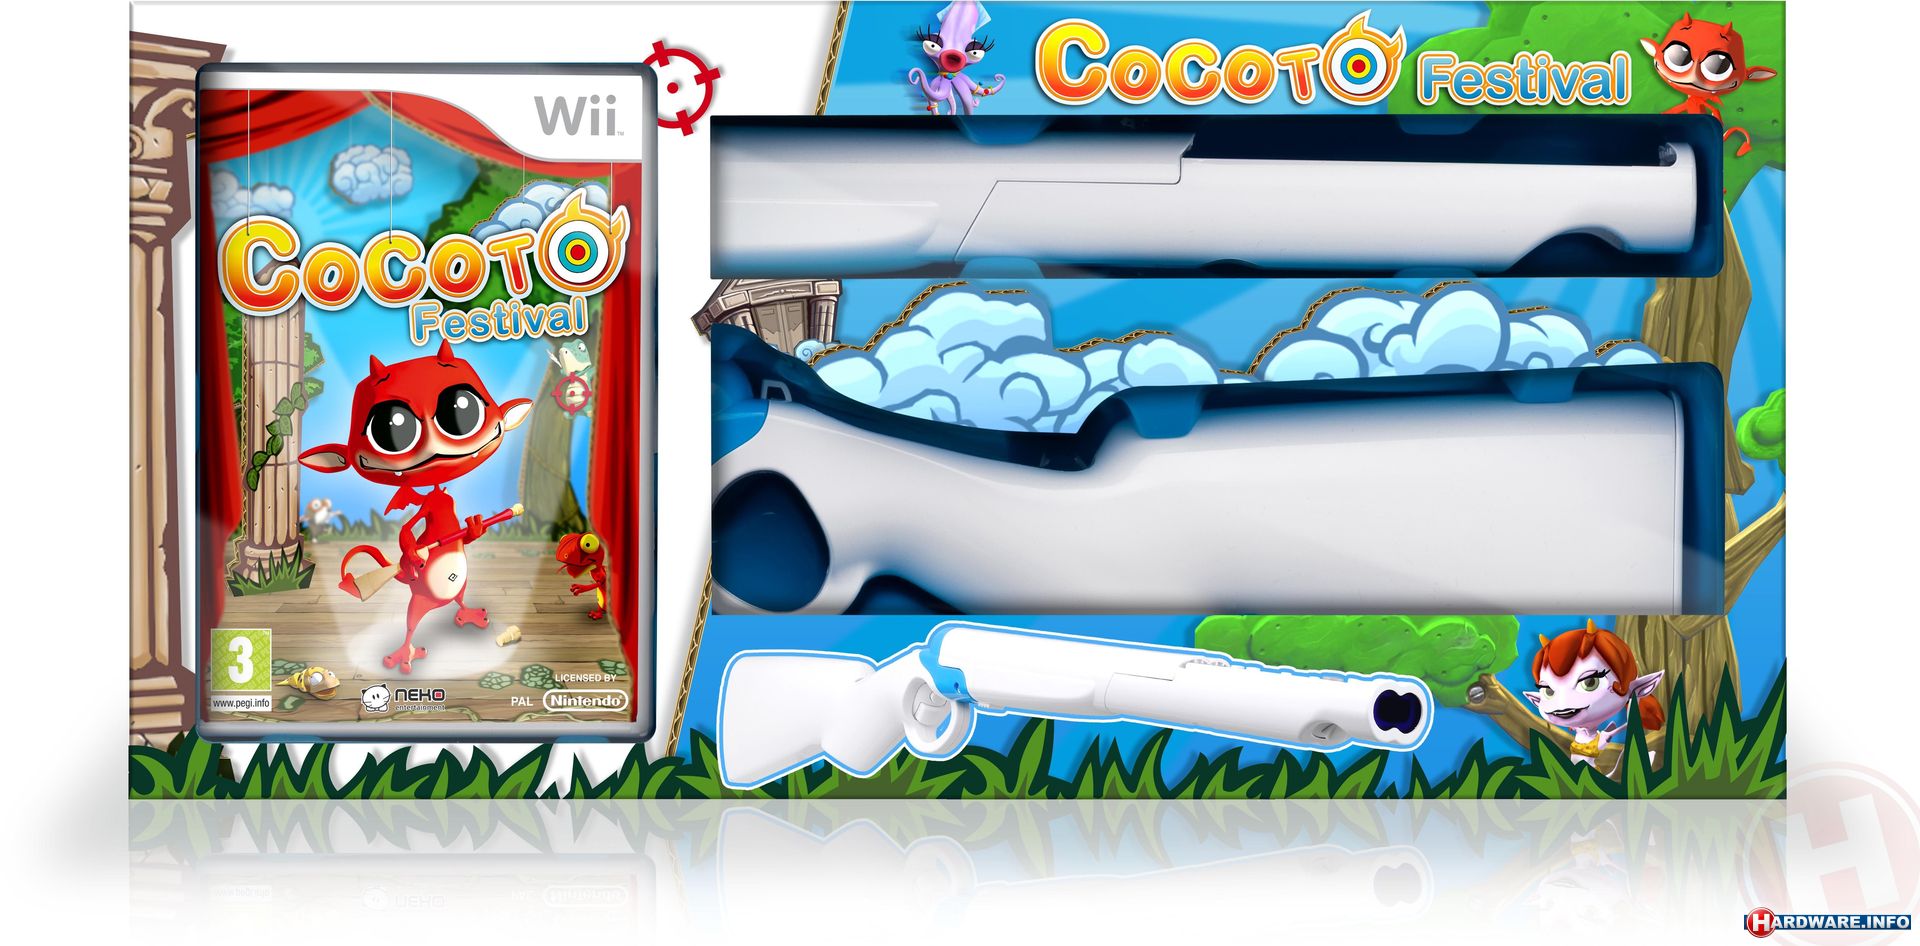 Plaats Schuldenaar Conflict Cocoto, Festival Bundle (Wii) game - Hardware Info